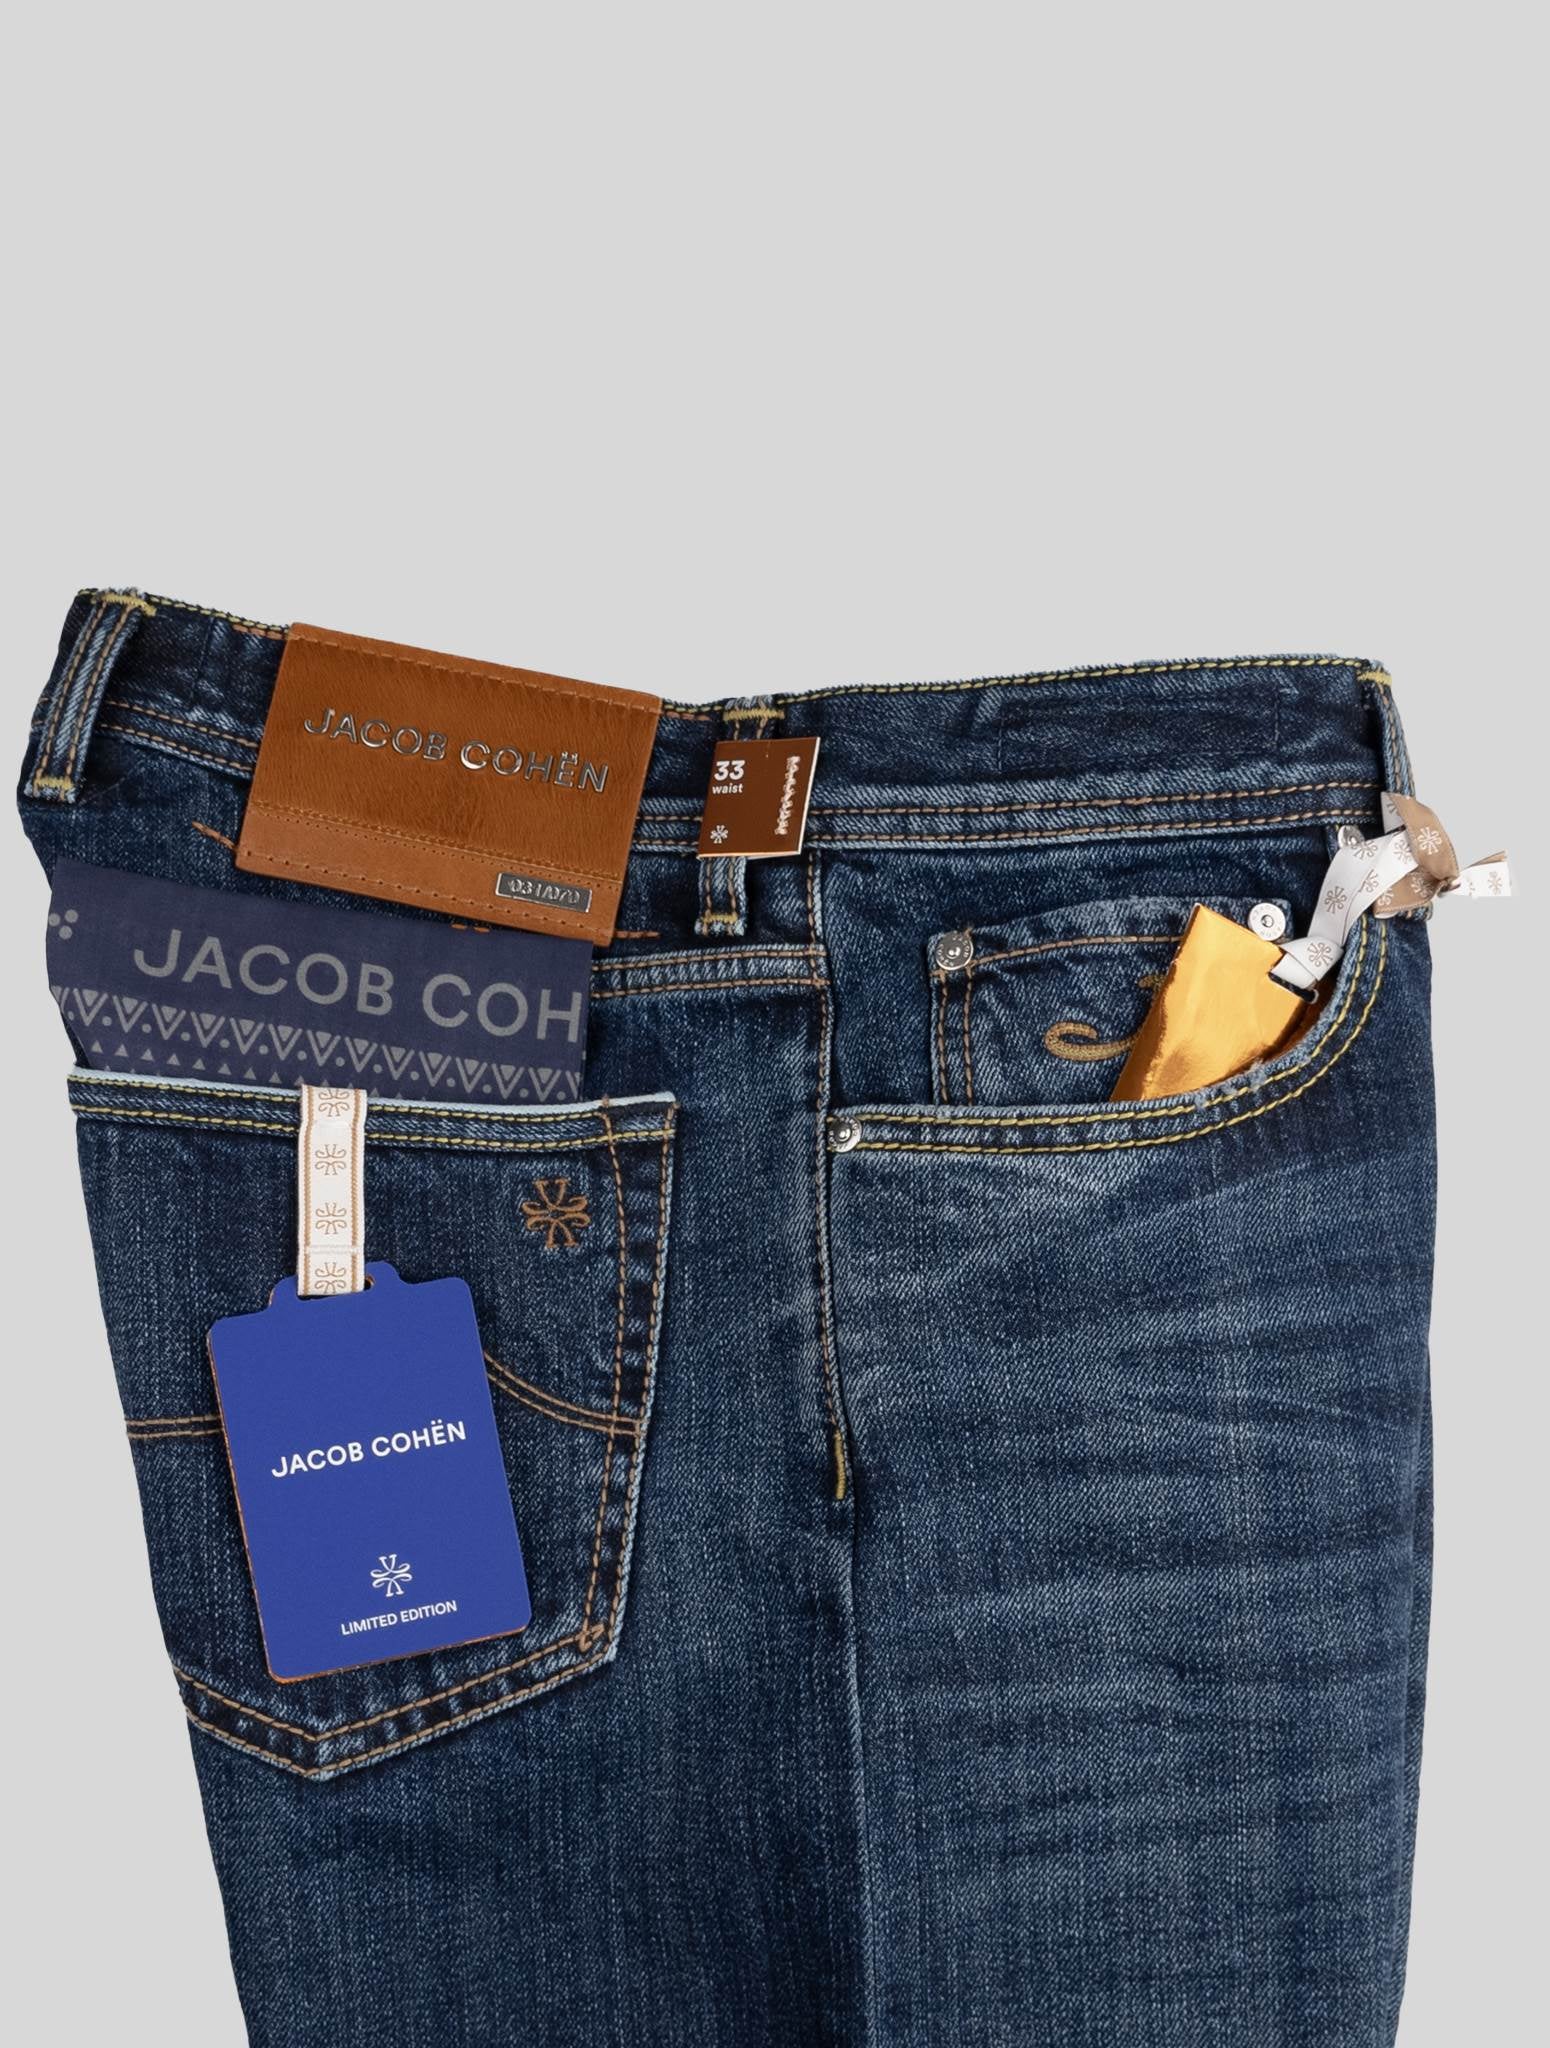 Jacob Cohen Blue Cotton Jeans Limited Edition – 2Men